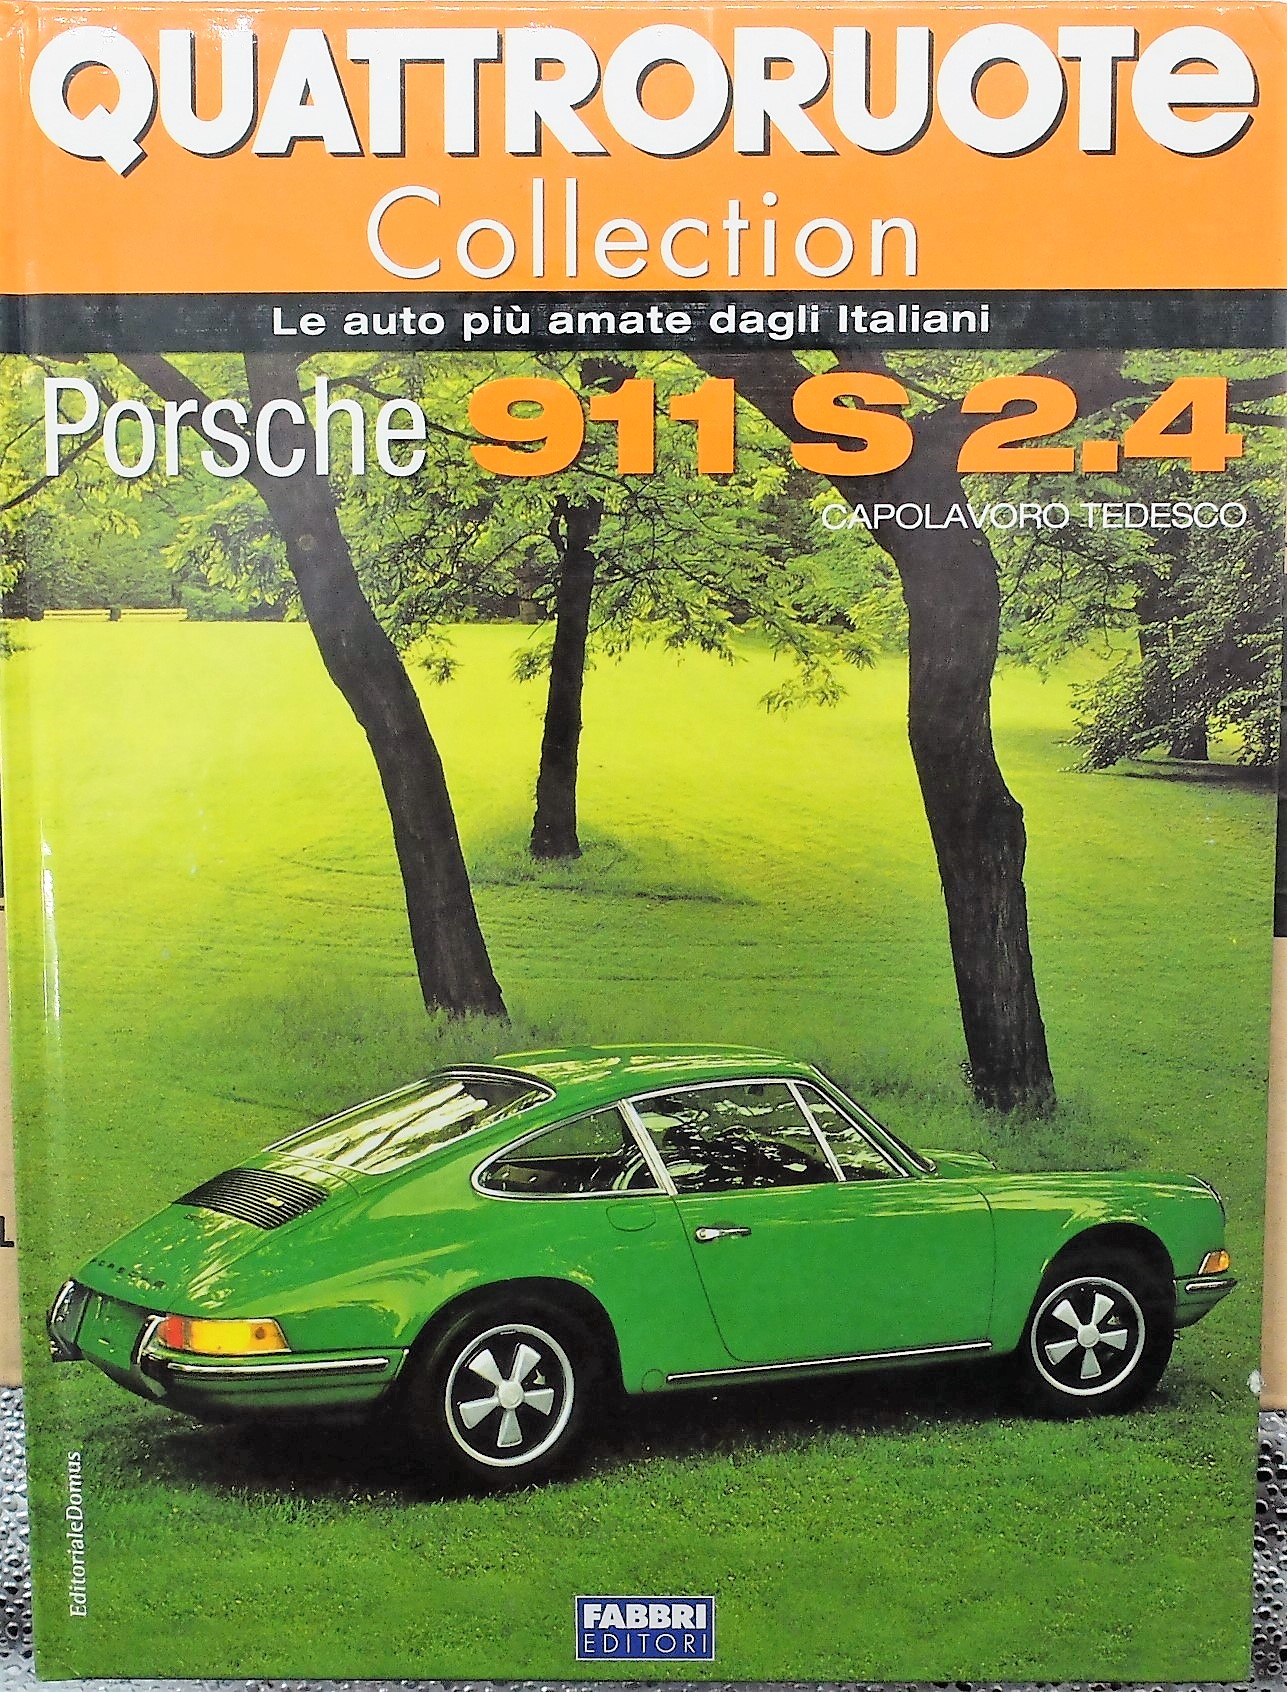 fascicolo Quattroruote Collection PORSCHE 911 S modellino auto 1:24 libro book